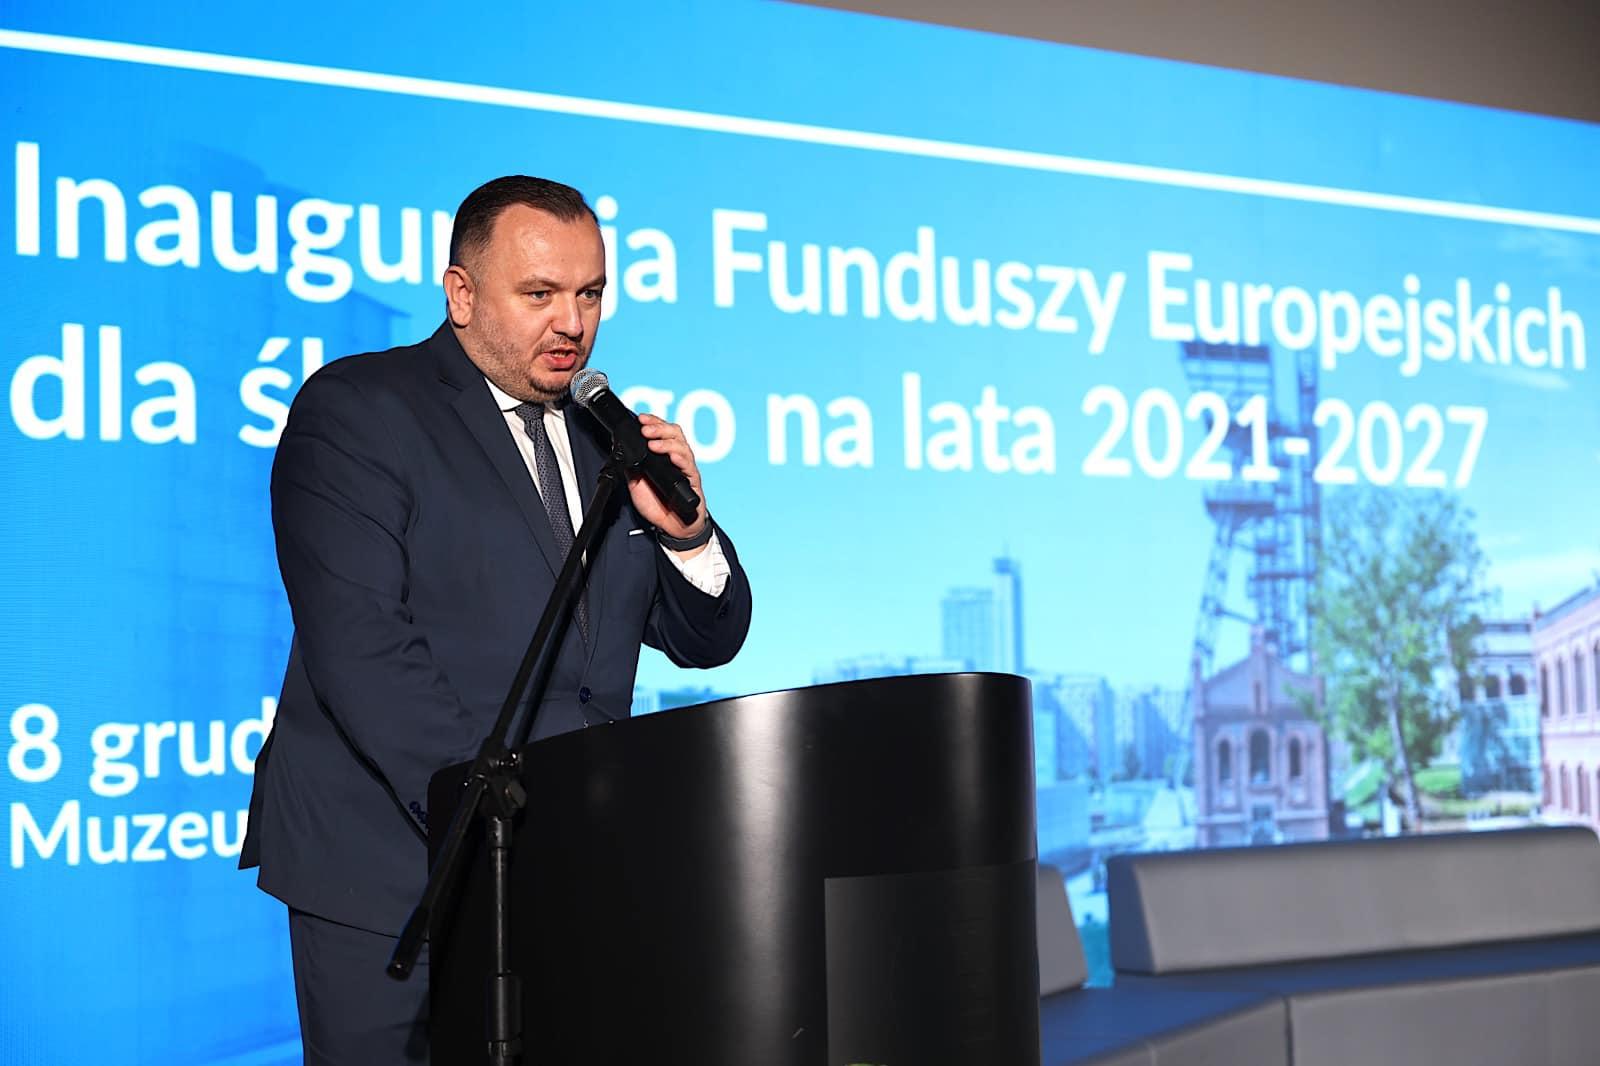 Konferencja "Fundusze Europejskie dla Śląskiego 2021-2027"